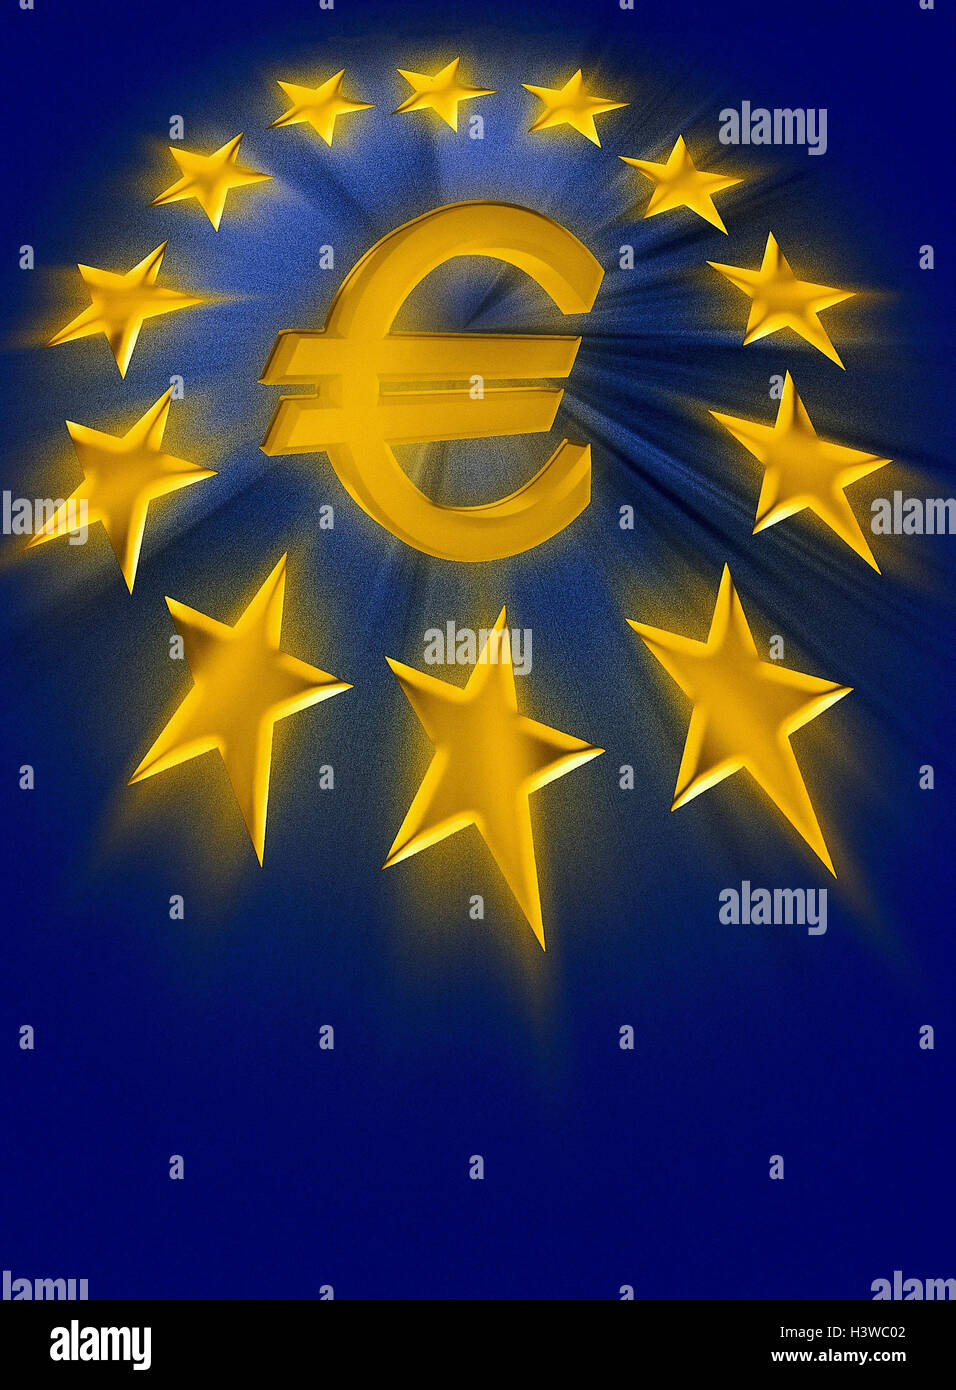 Symbol, Europäische Währungsunion, Abbildung Währung, Euro, EU Sterne, [M], EWWU, WWU, der EU, der Europäischen Union, Währung, Einheitswährung, Währungssystem, Einheit, Europa Stockfoto